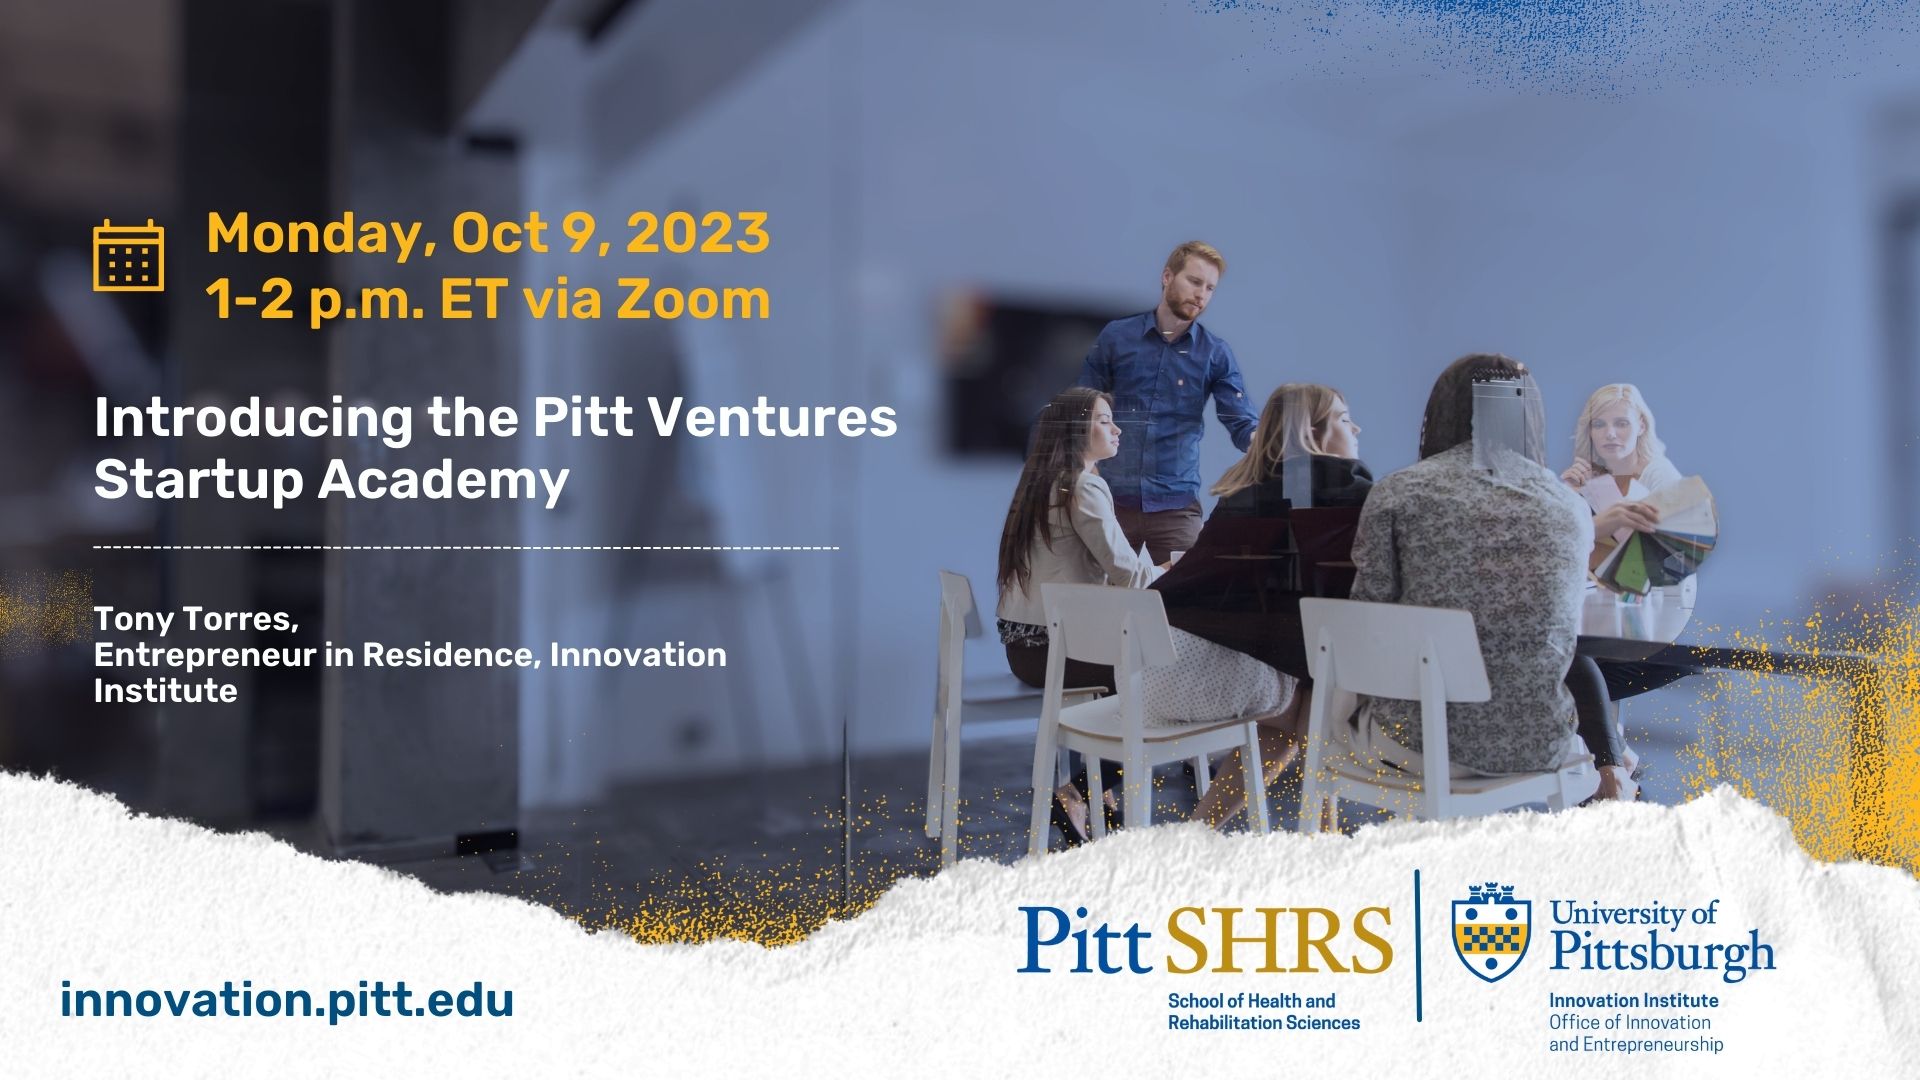 SHRS Innovation Seminar Startup Academy